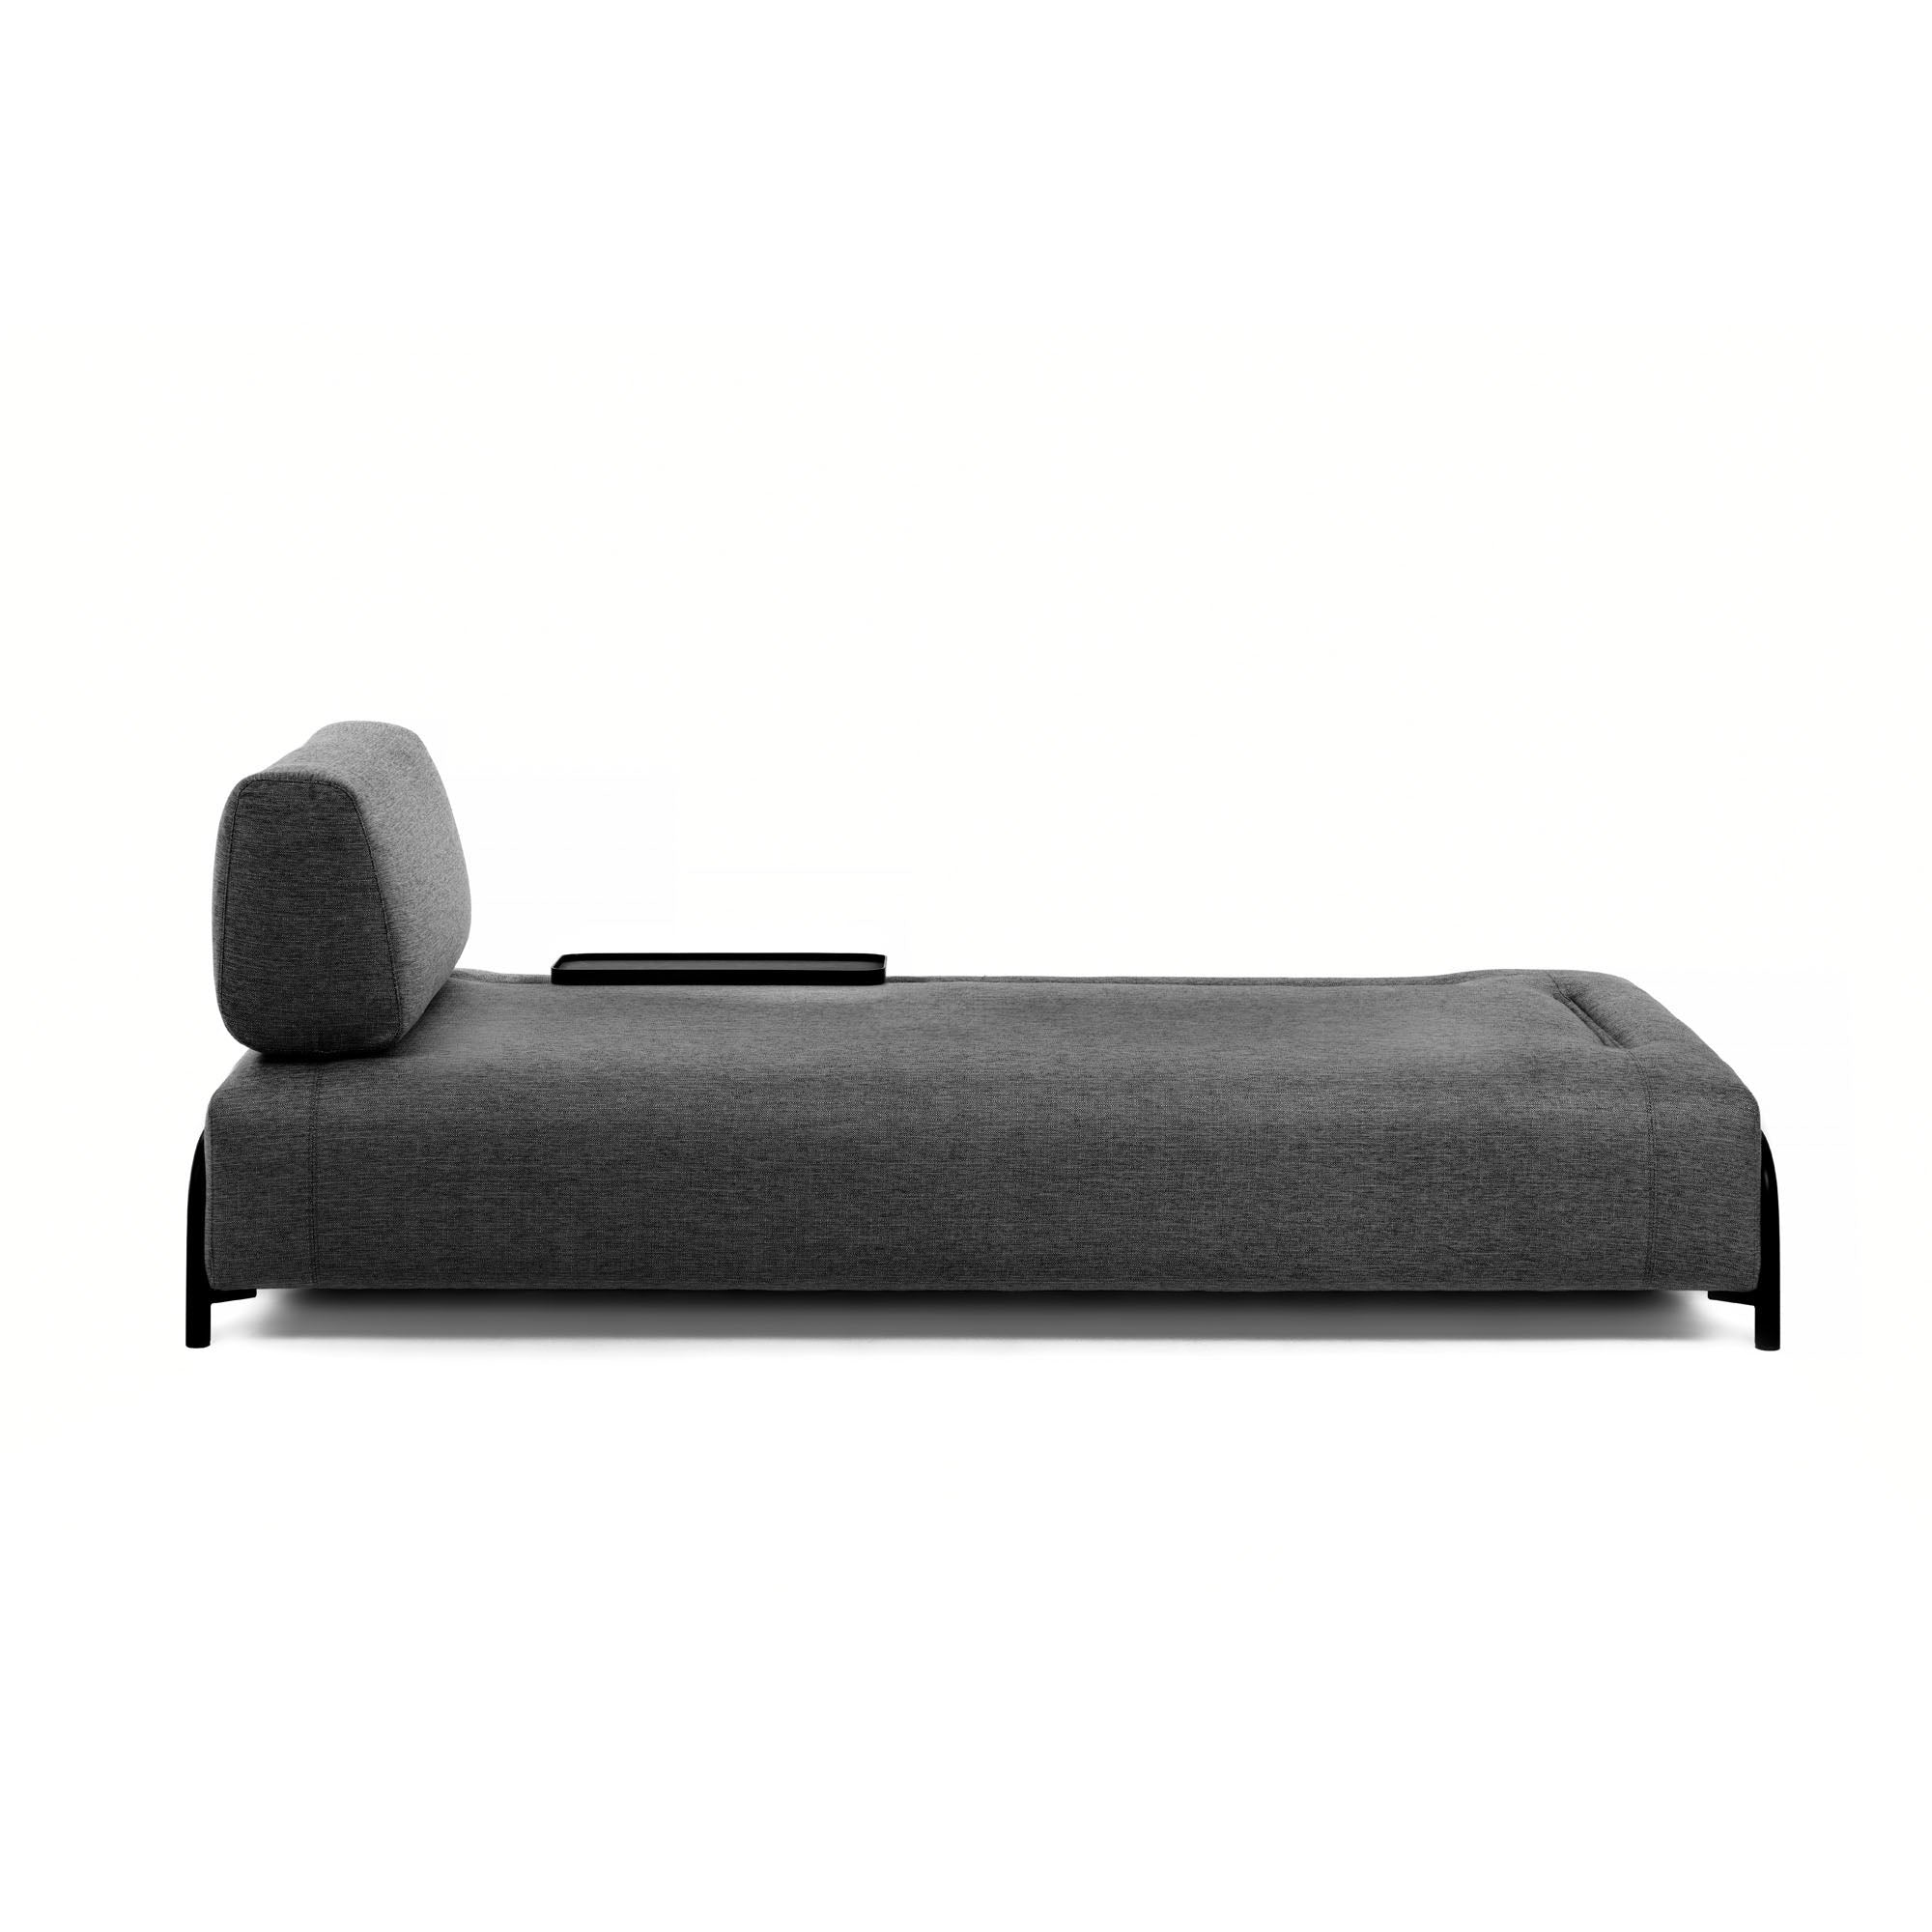 Compo 3 személyes kanapé kis tálcával, sötétszürke színben, 232 cm